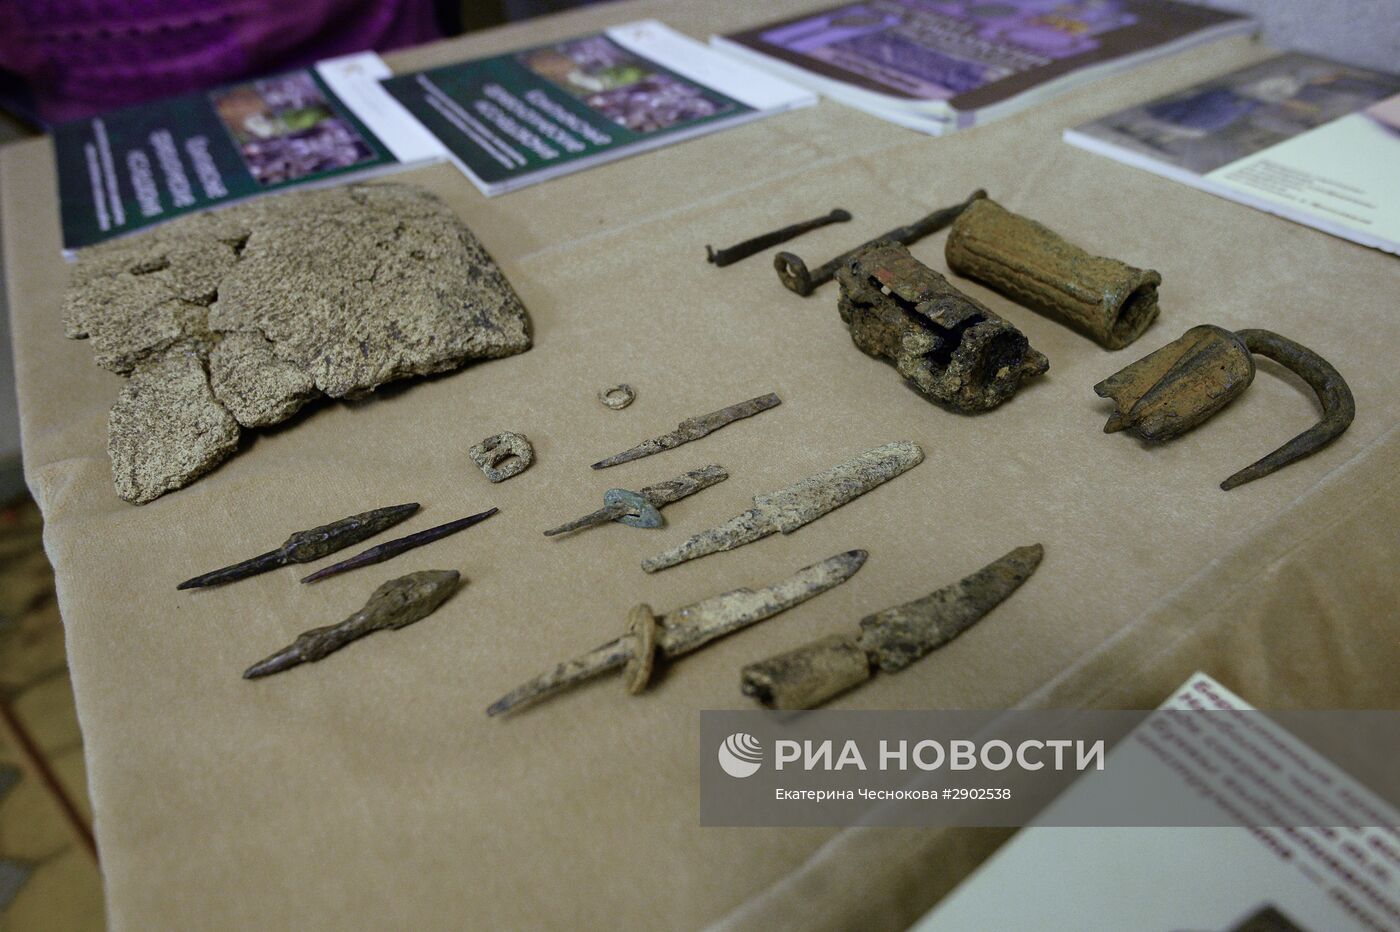 Археологические раскопки на месте снесенного 14-го корпуса Московского Кремля